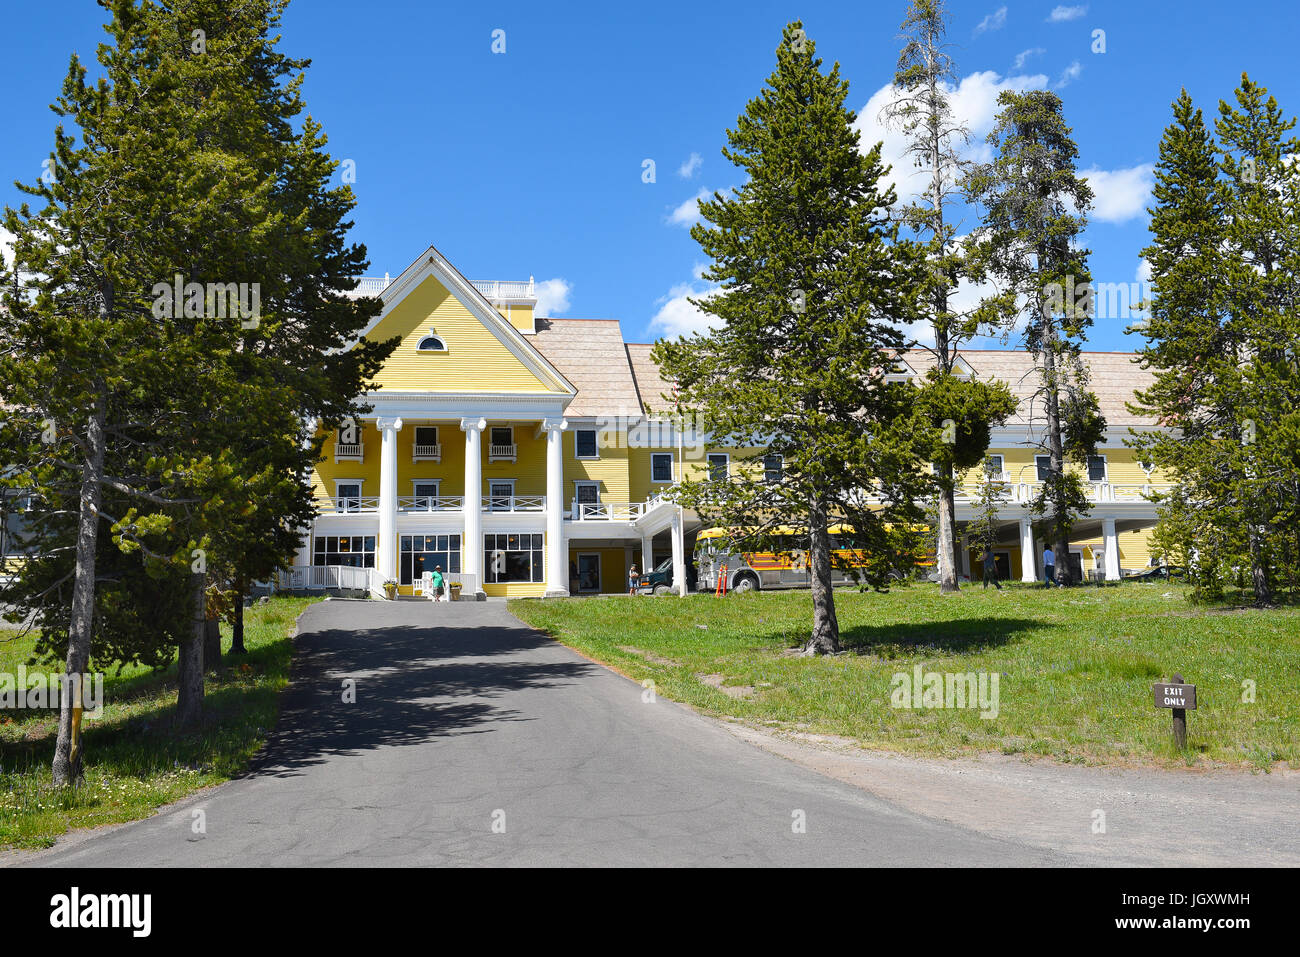 Le parc national de Yellowstone, Wyoming - Juin 25, 21017 : le Lake Hotel. La plus ancienne et la plus remarquable se trouve dans le parc est célèbre son 125e annivers Banque D'Images